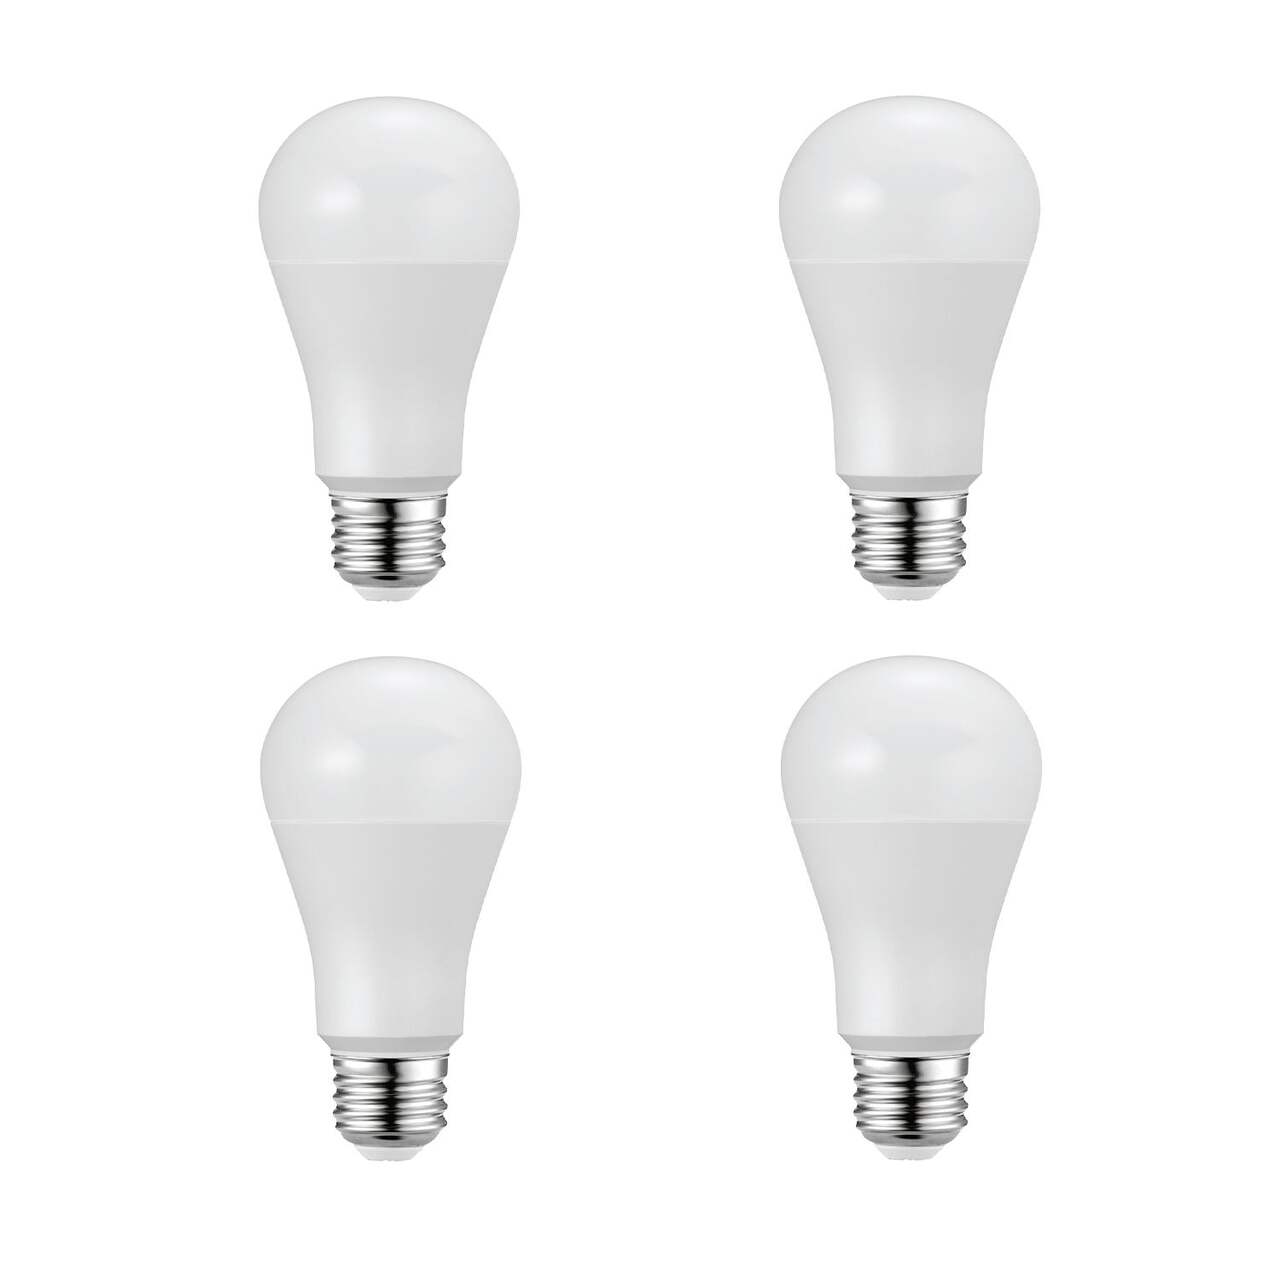 Ampoules pour projecteur à DEL non variable à culot E26 pour la maison NOMA  A19, 2700K, 1550 lumens, blanc doux, 100 W, paq. 4